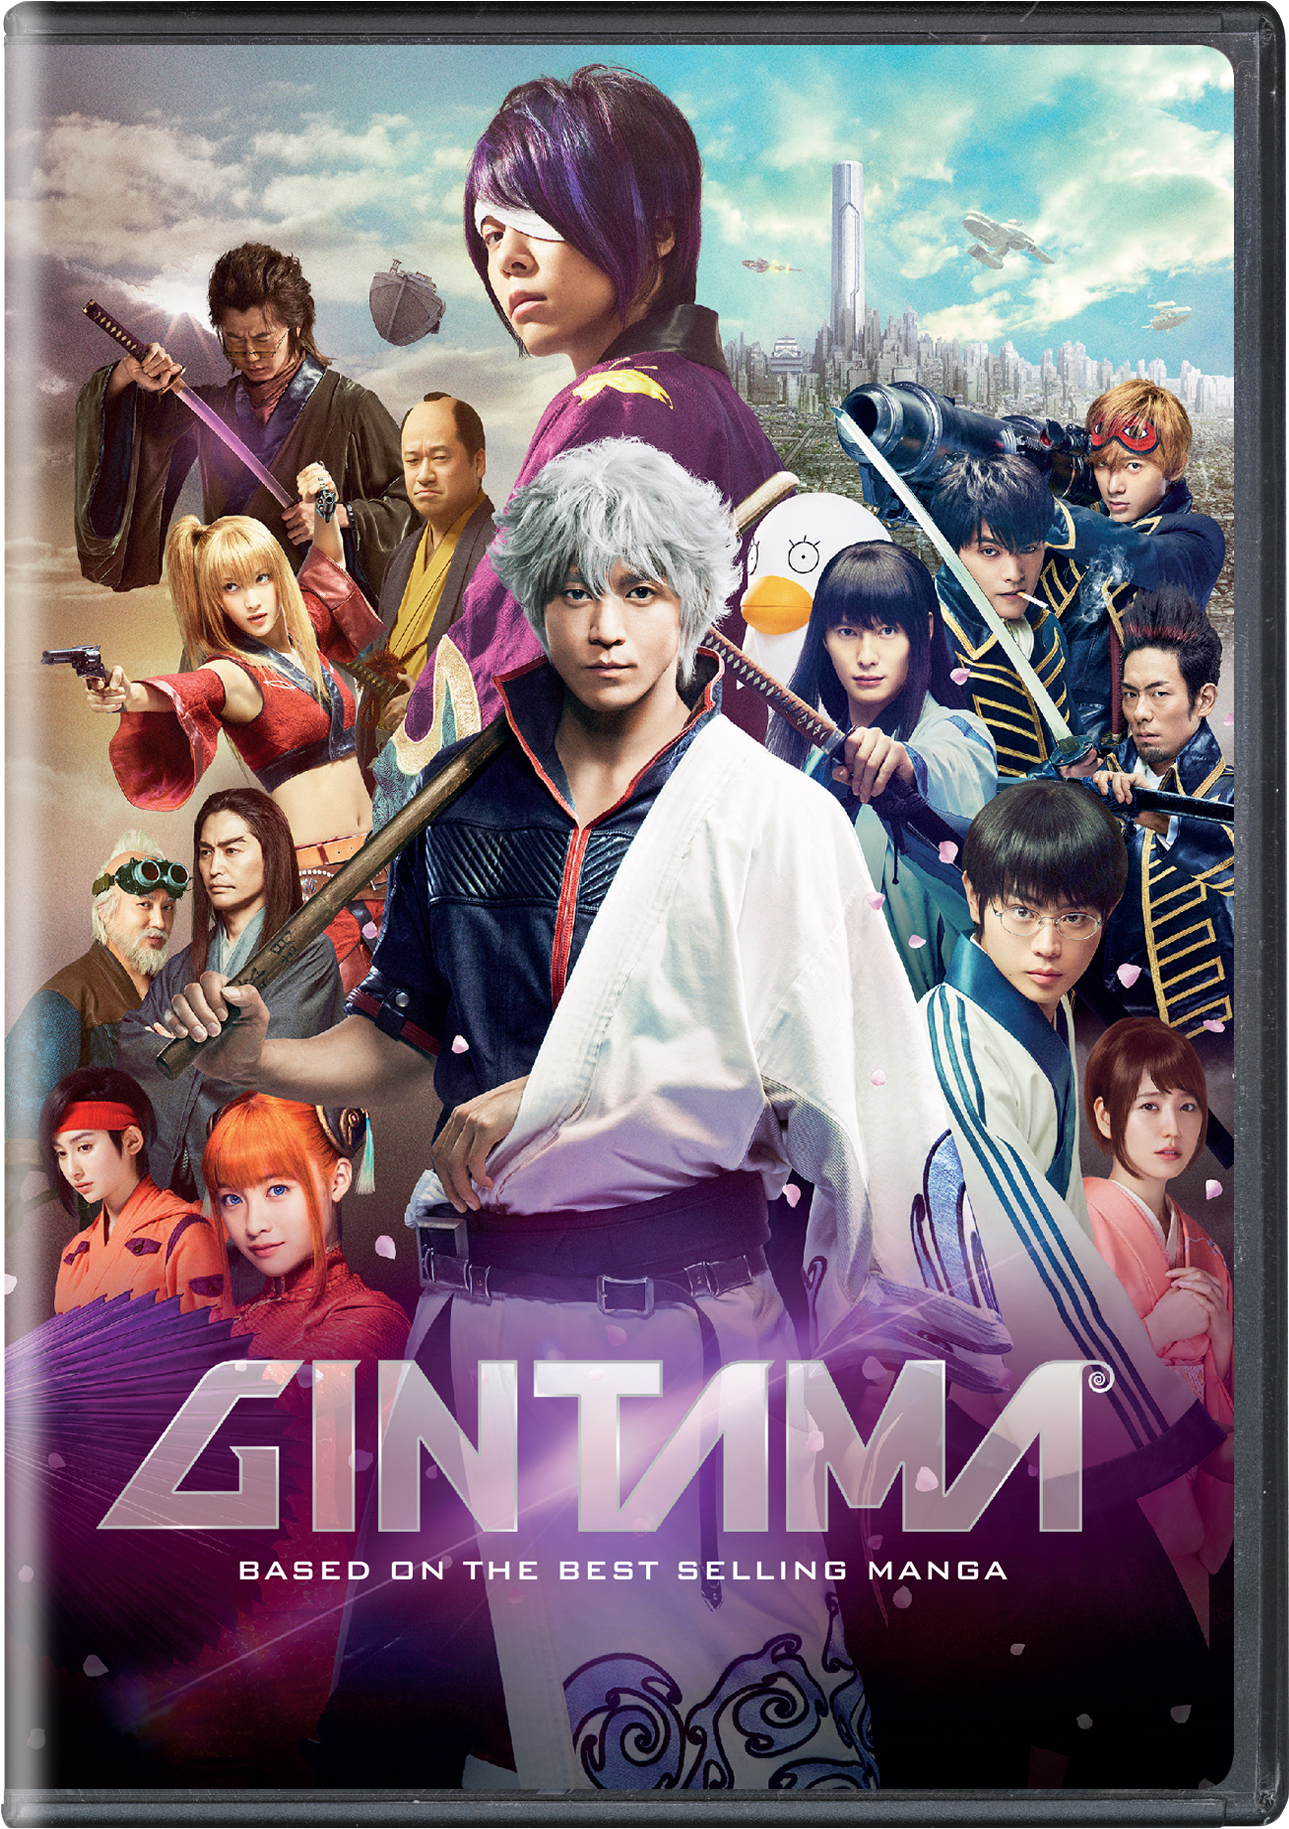 Gintama: The Movie - DVD [ 2010 ]  - Anime Movies On DVD - Movies On GRUV